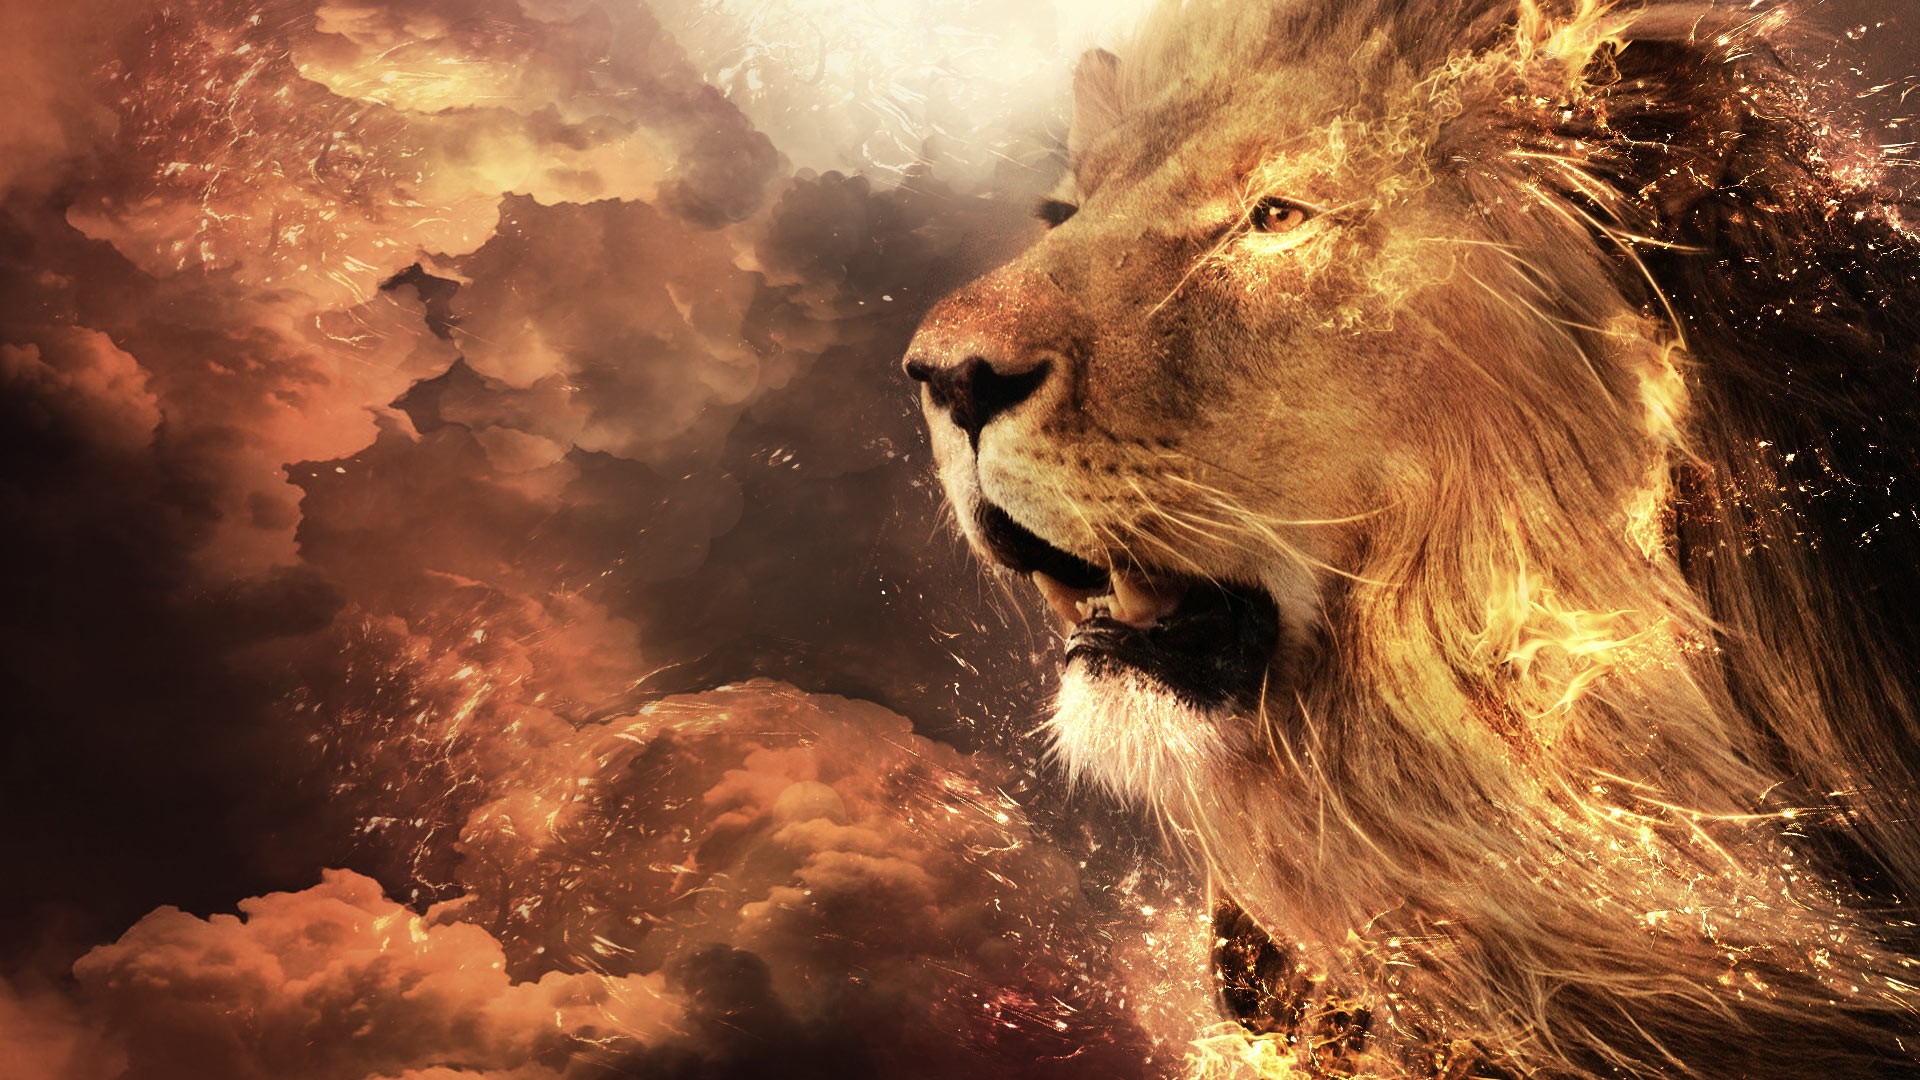 roar lion full hd picsBest HD Lions Wide Screen Wallpapers Free